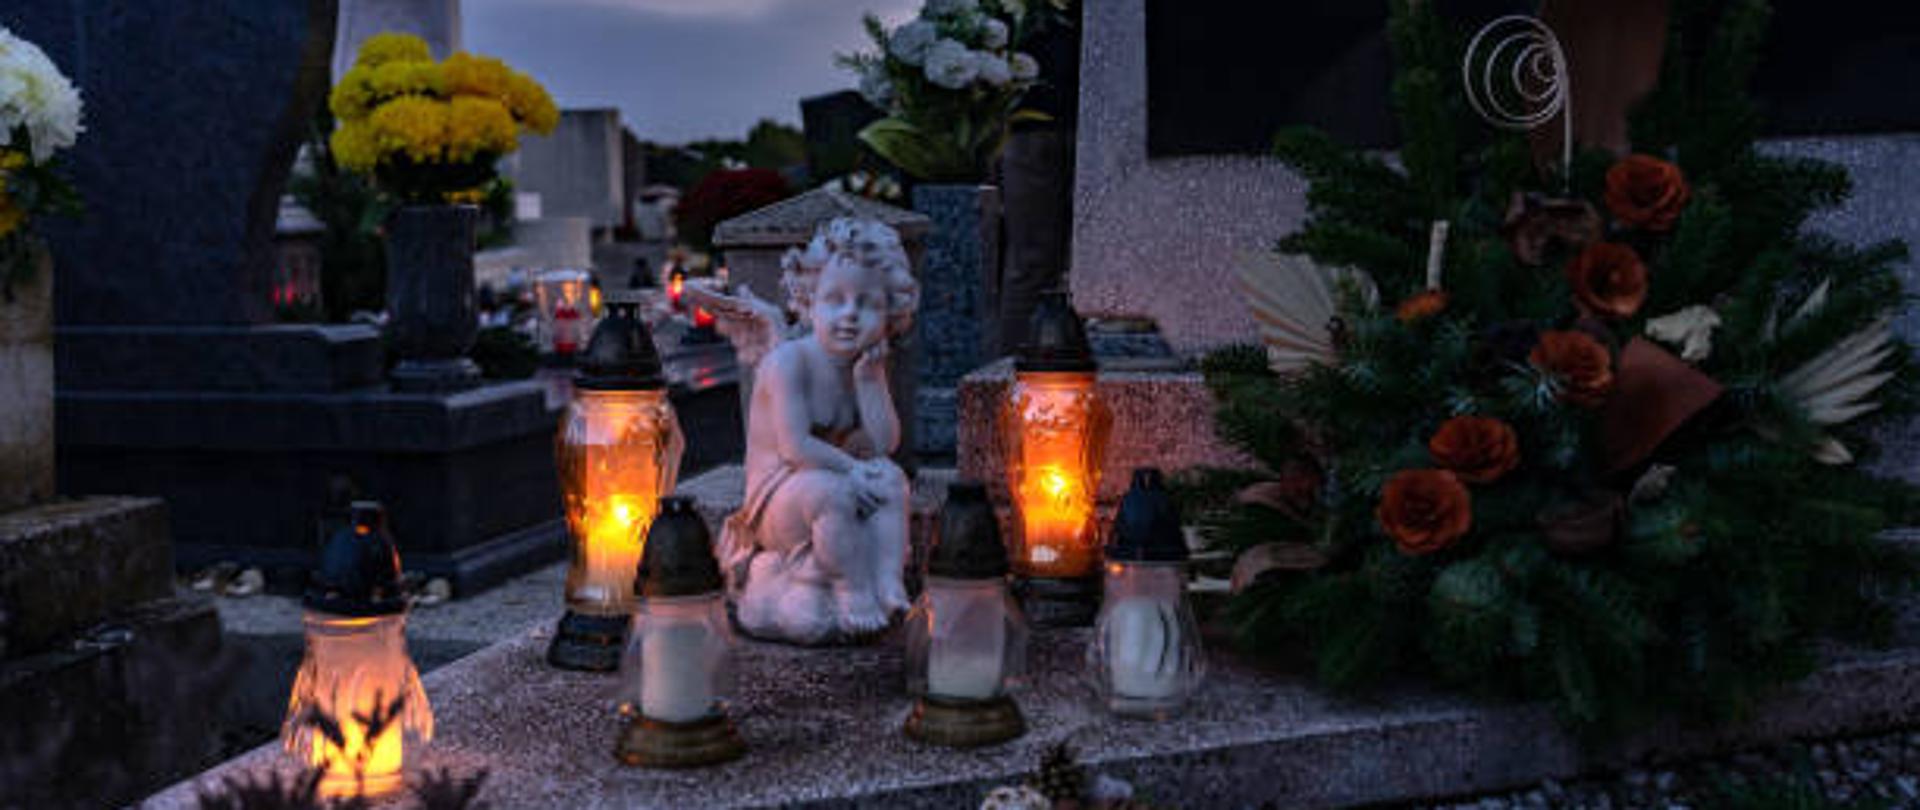 Znicza na cmentarzu w dzień wszystkich świętych z figurą anioła.